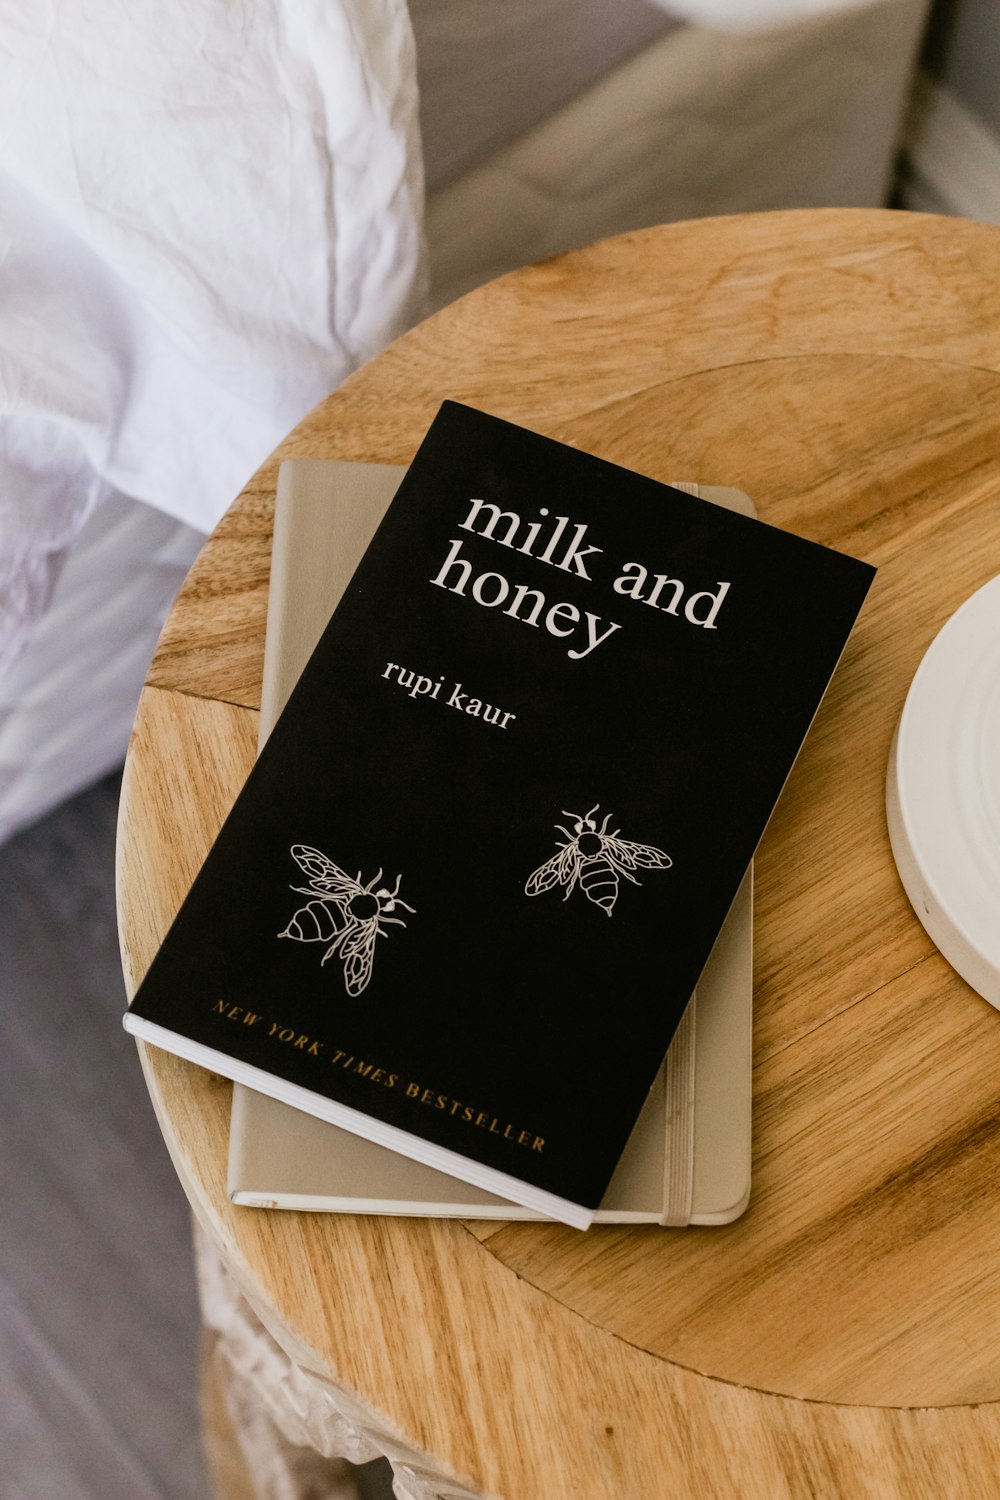 Libro Milk and Honey de Rupi Kaur en la mesa auxiliar